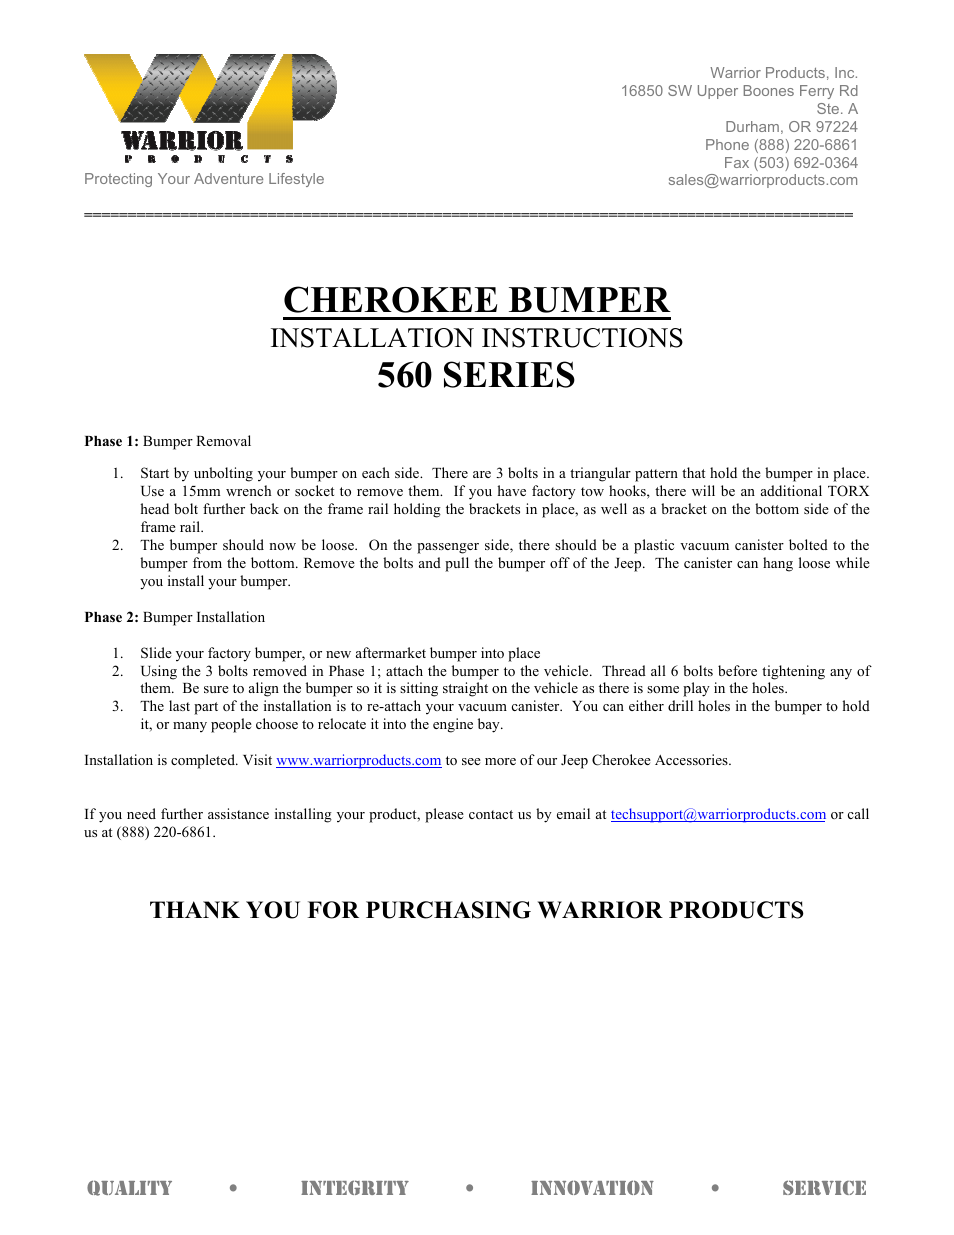 560 SERIES CHEROKEE BUMPER (1984 – 2001 Jeep XJ Cherokee)